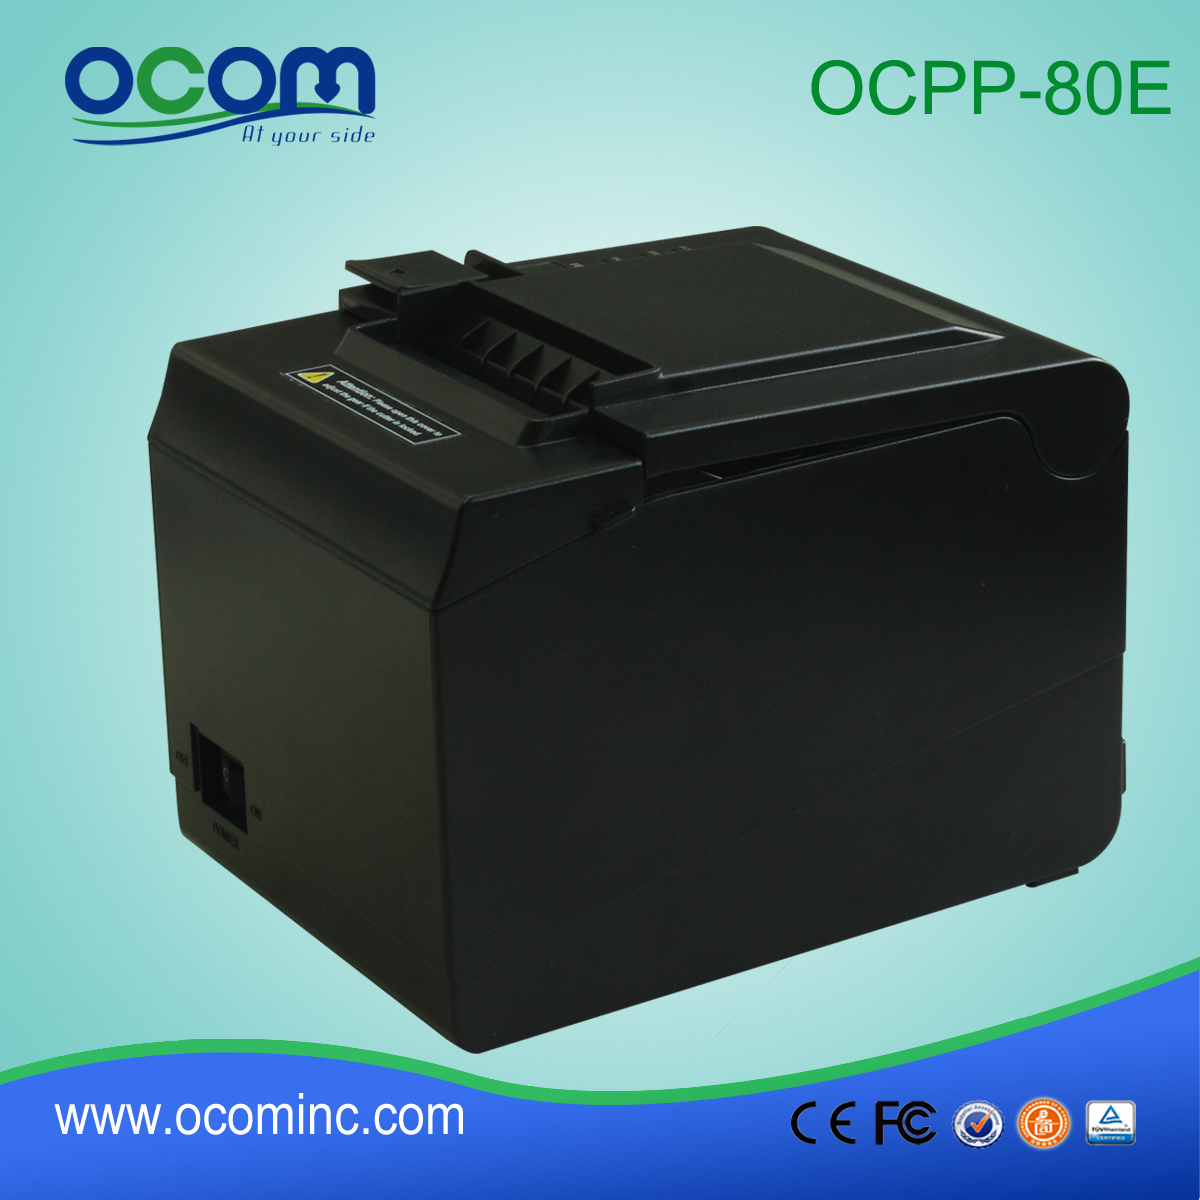 OCPP-80E --- China fabriek van hoge kwaliteit Android thermische printer